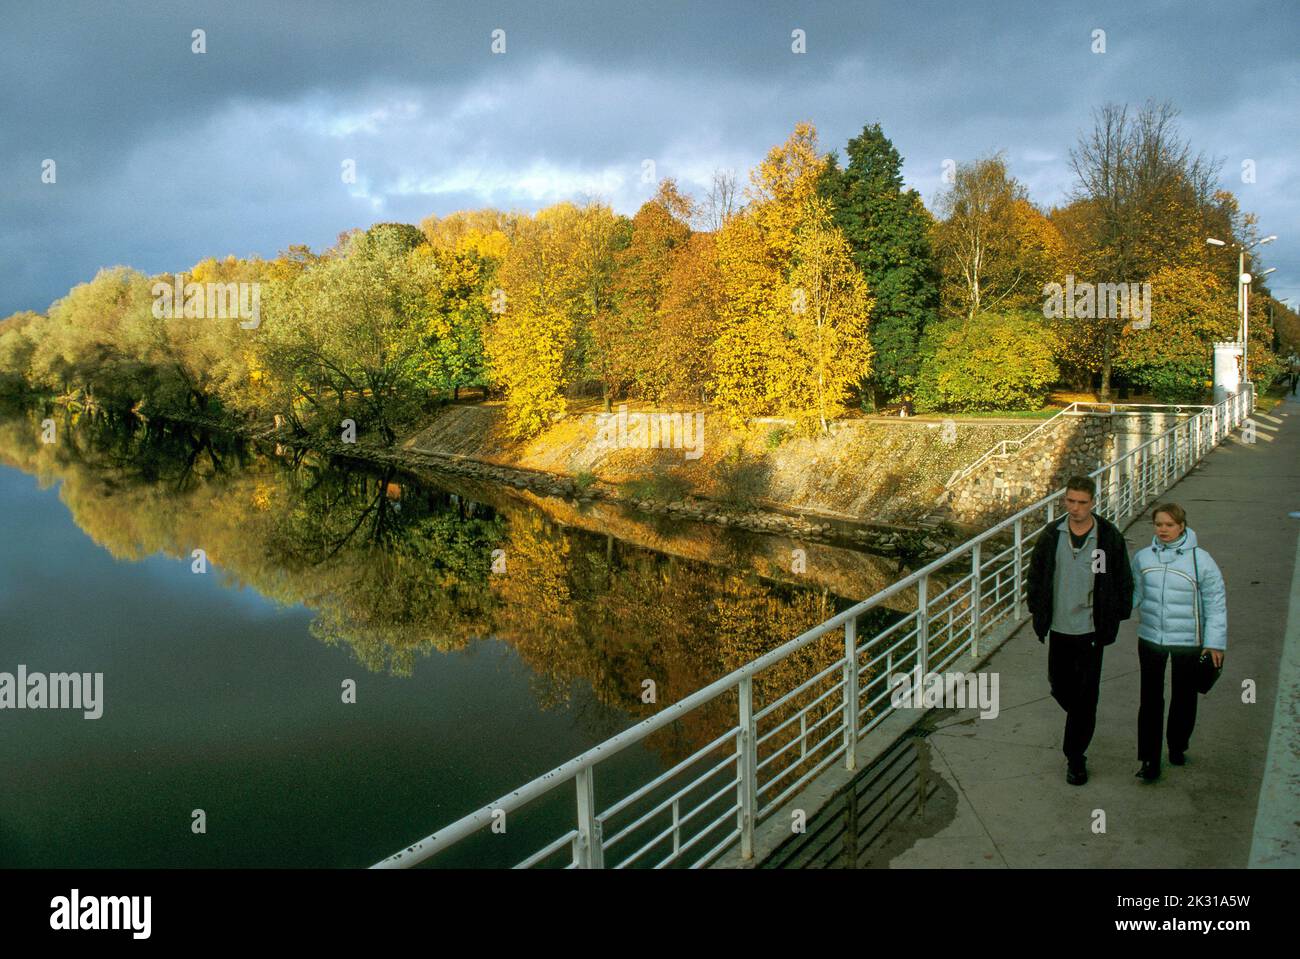 Paseando por el río Emajogi en Tartu, Estonia, en una tarde de otoño Foto de stock